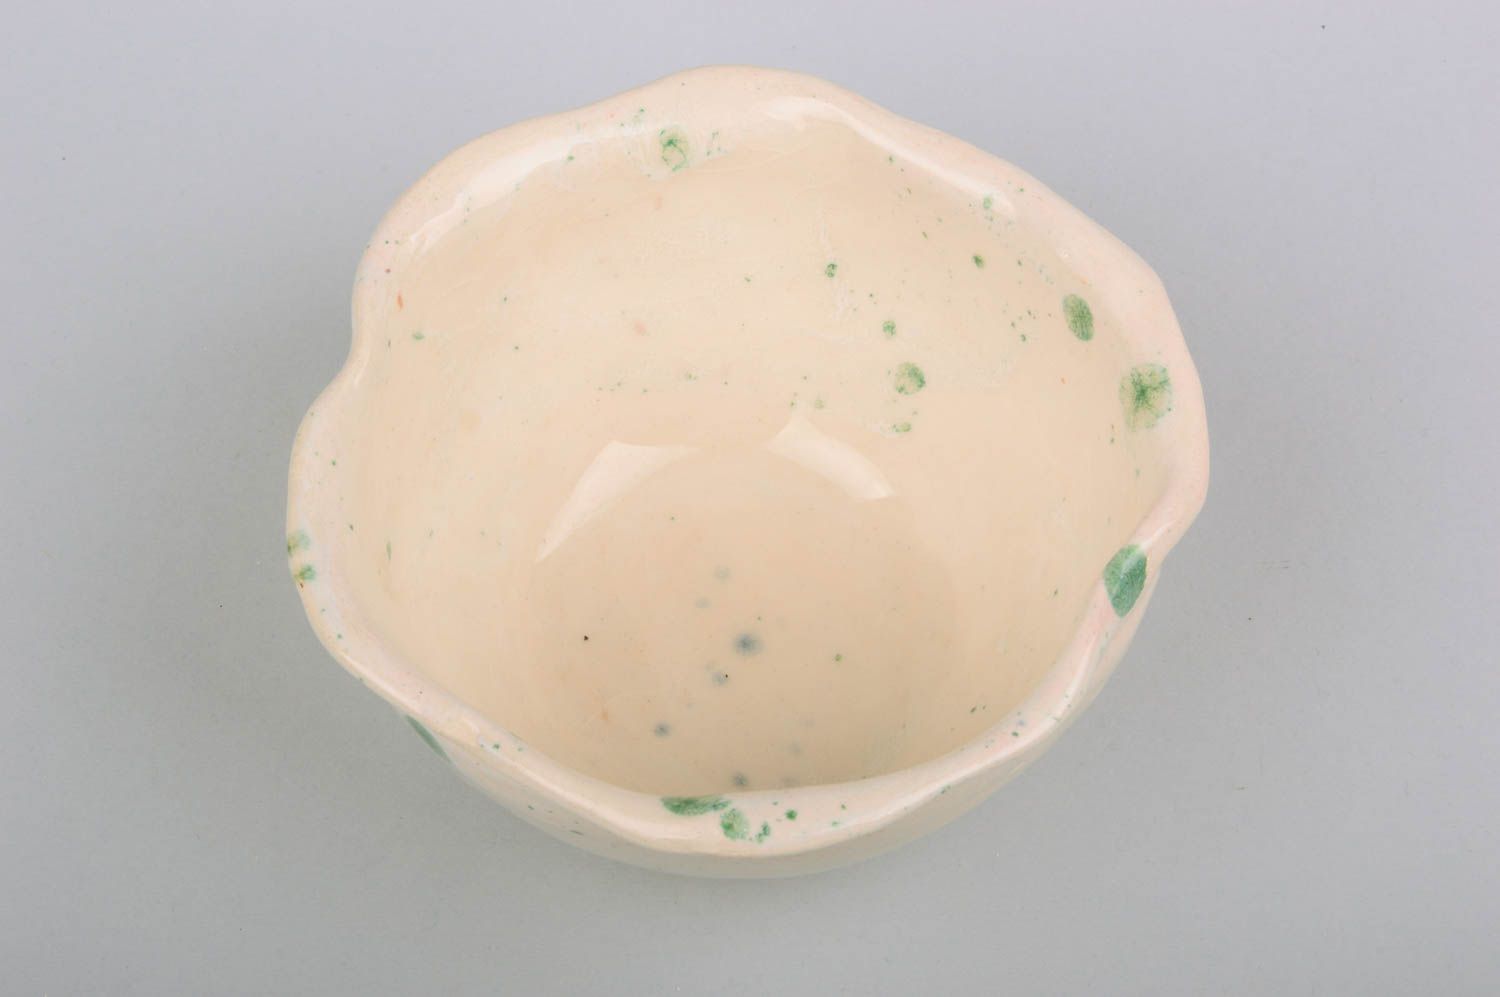 Small homemade ceramic bowl designer clay bowl designer ceramics gift ideas photo 2